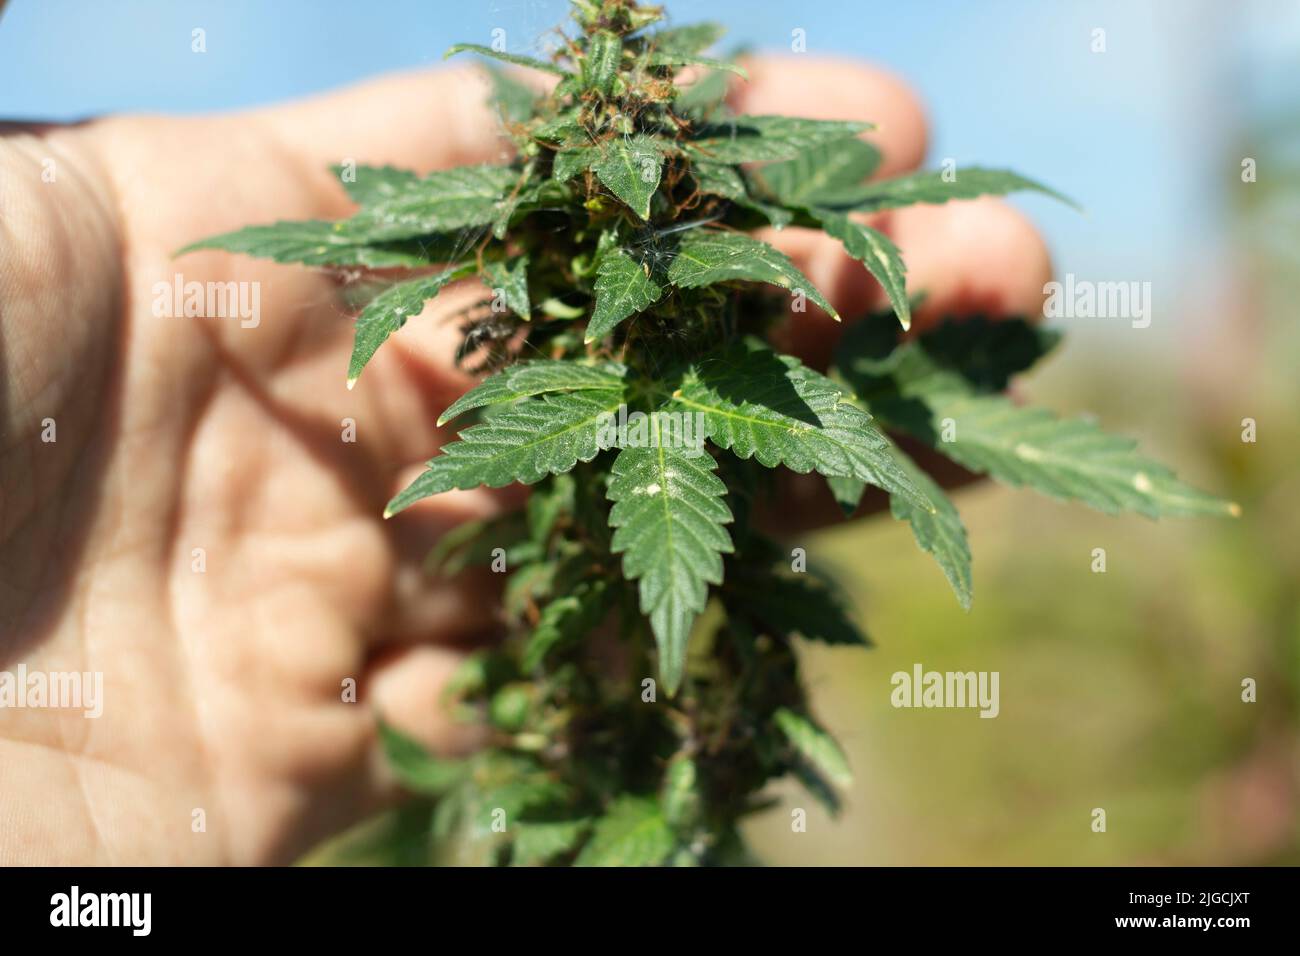 La plante de marijuana est en été. La main tient le cannabis. Plante de marijuana sauvage. Médicament dans la nature. Banque D'Images